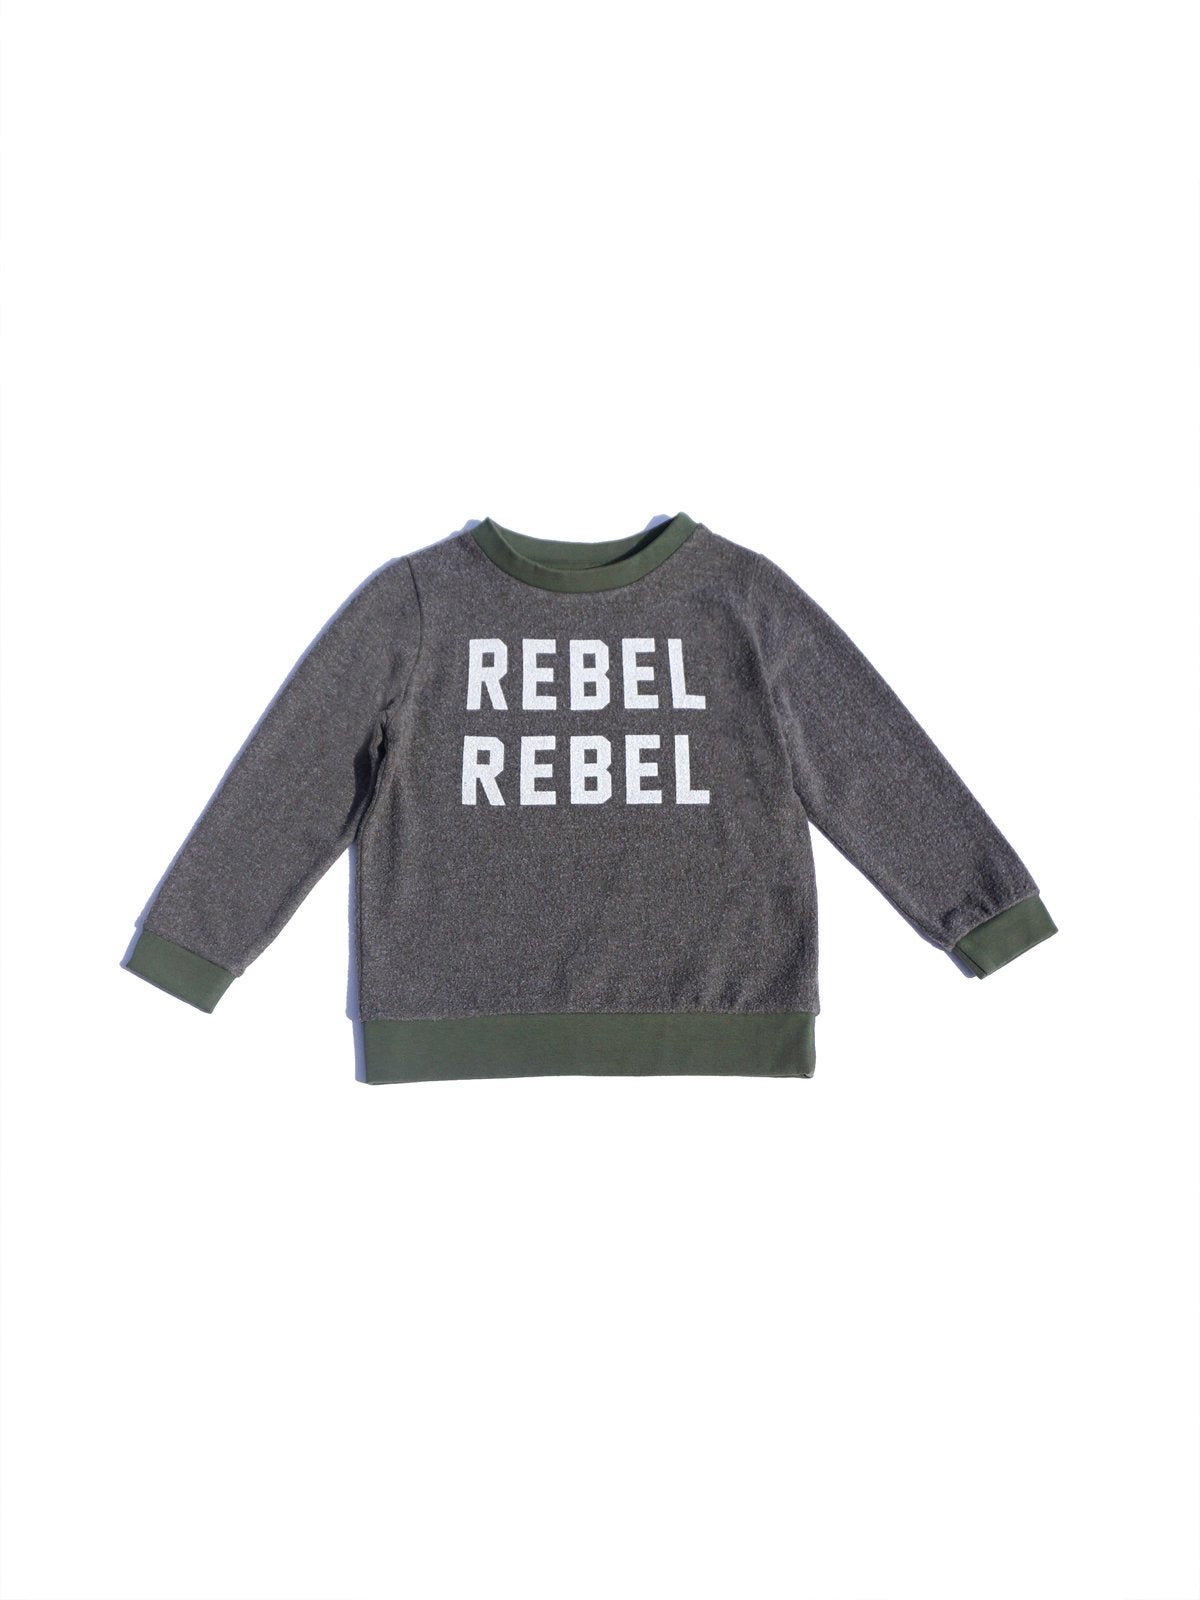 Rebel Pullover Infant Sol Angeles